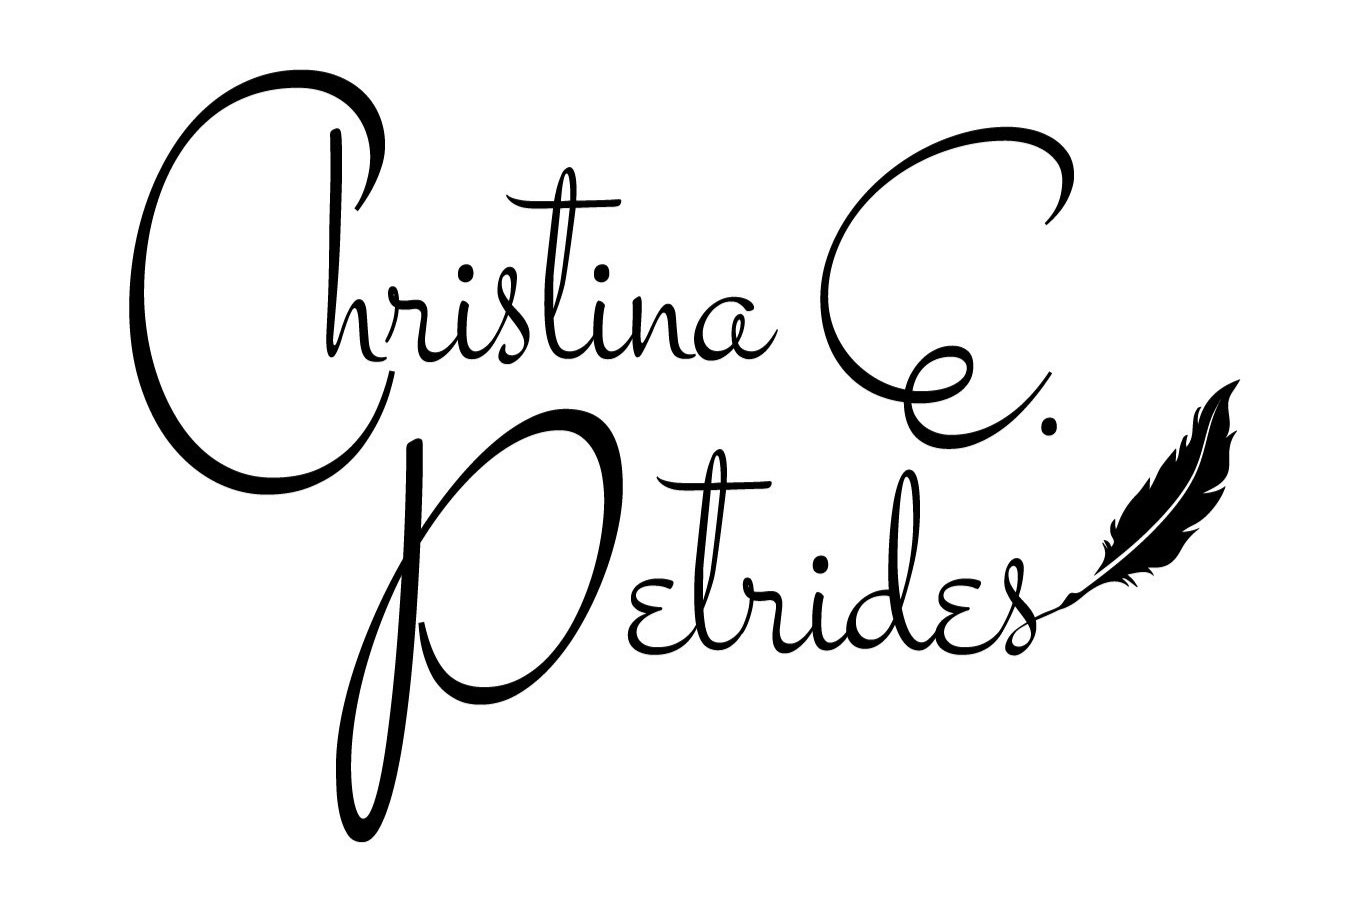 Christina E. Petrides